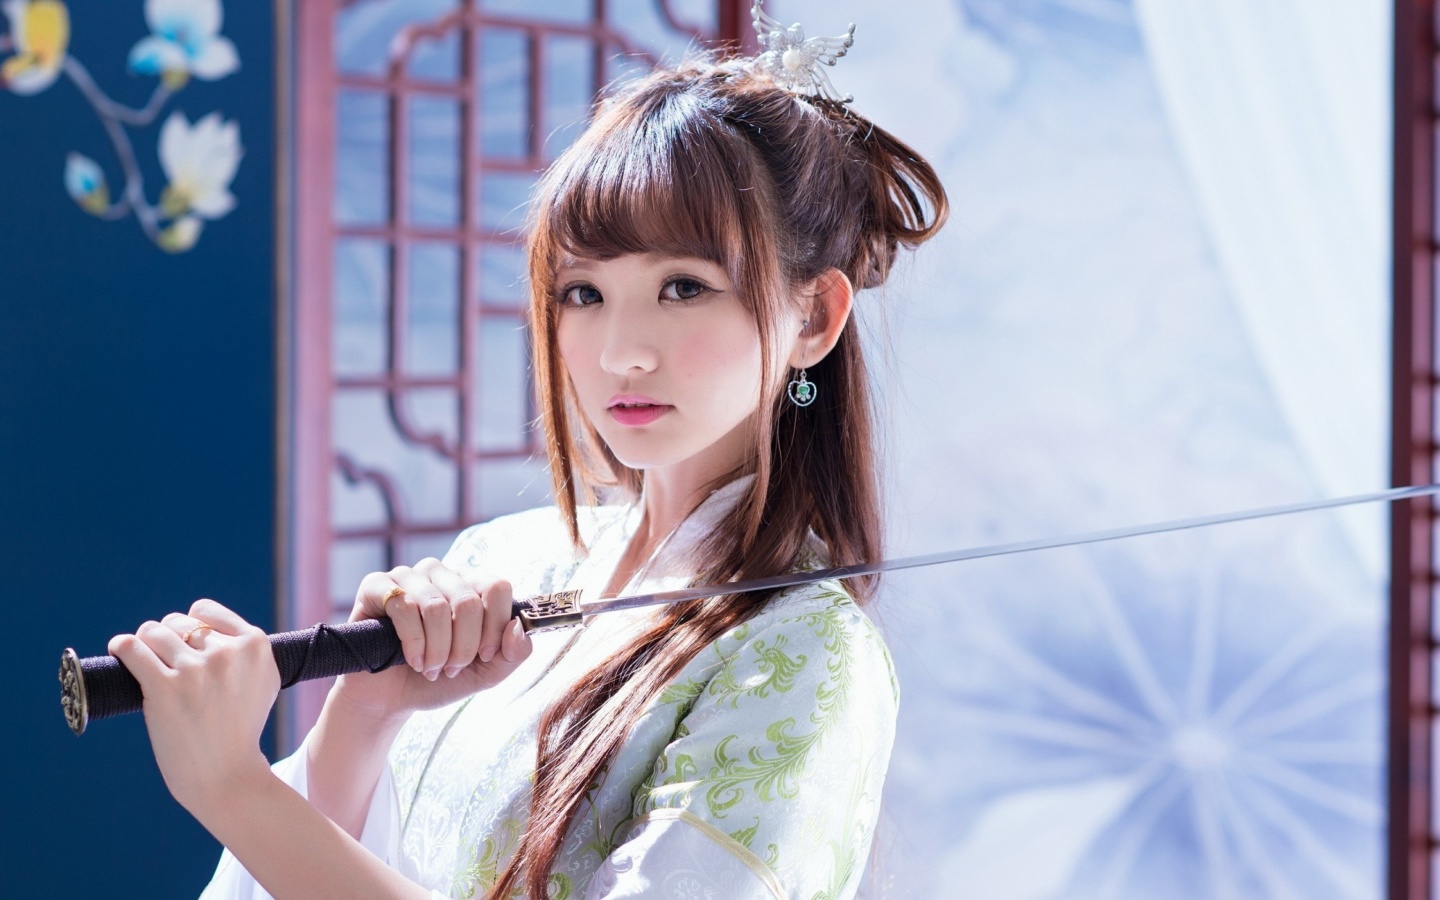 Samurai Girl with Katana wallpaper 1440x900